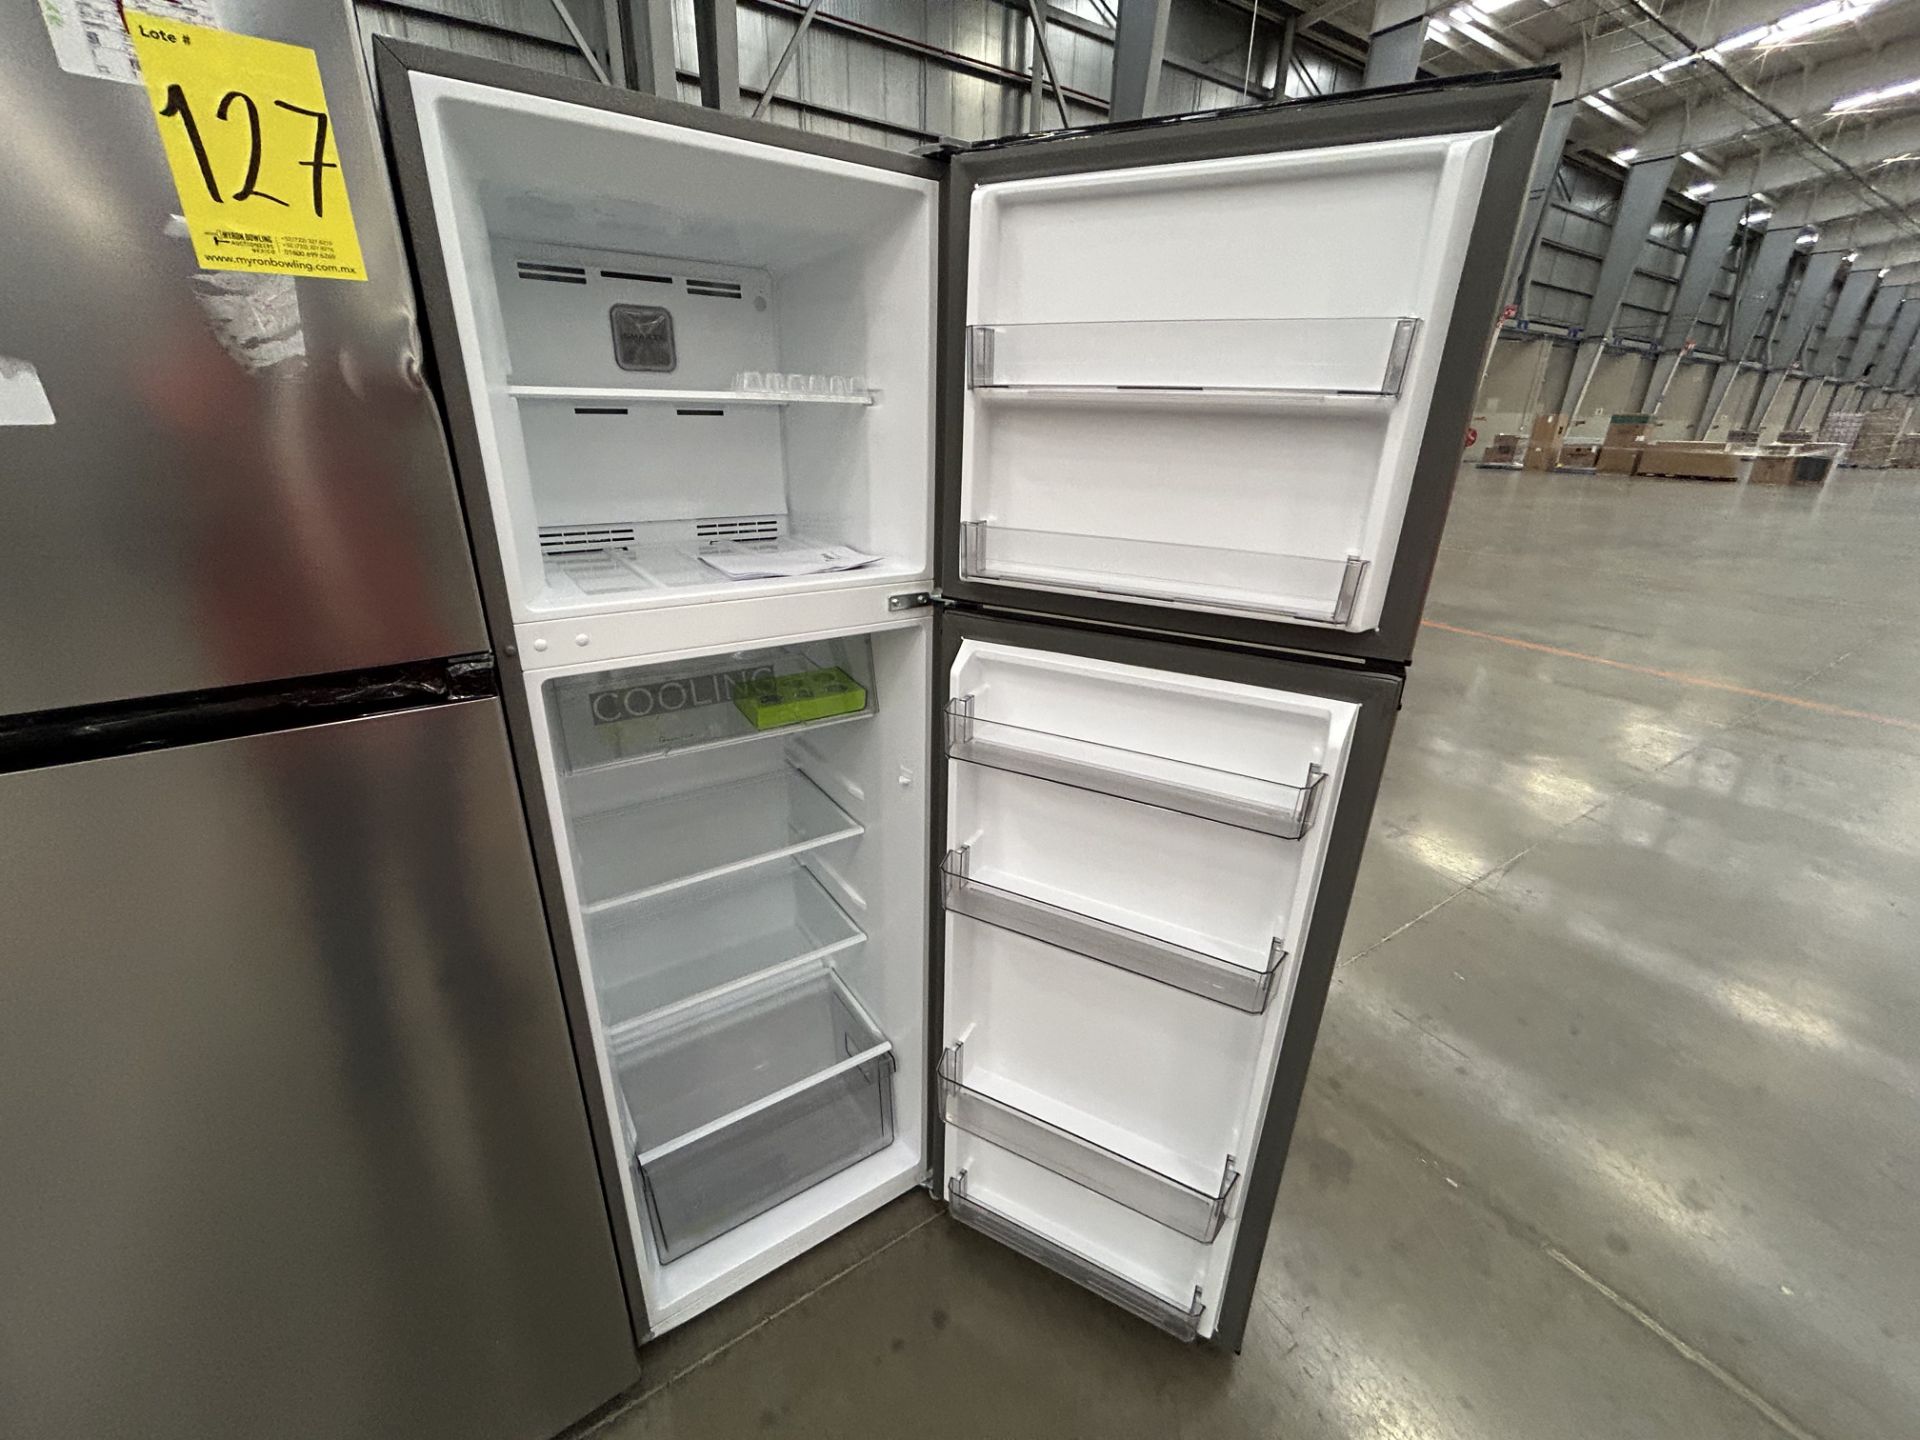 Lote de 2 refrigeradores contiene: 1 refrigerador Marca MIDEA, Modelo MDRT280WINDX, Serie 11872, Co - Image 4 of 6